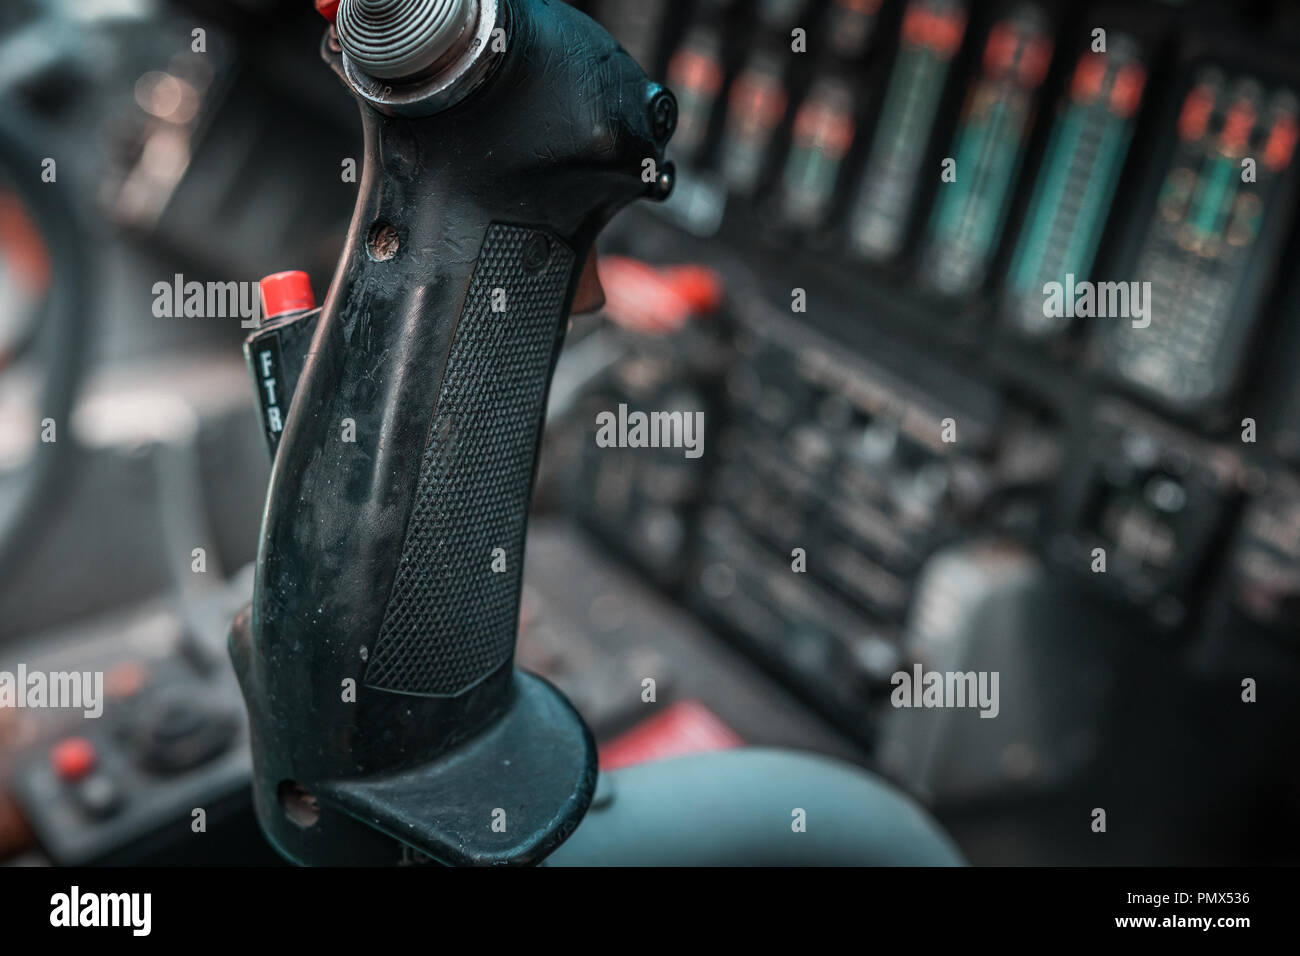 Dettagli di un bombardiere ha respinto il cockpit. Focus sul fuoco il joystick e pulsanti rossi per attacchi aerei e bombardamenti del cielo. La tecnologia della difesa, il governo. Foto Stock